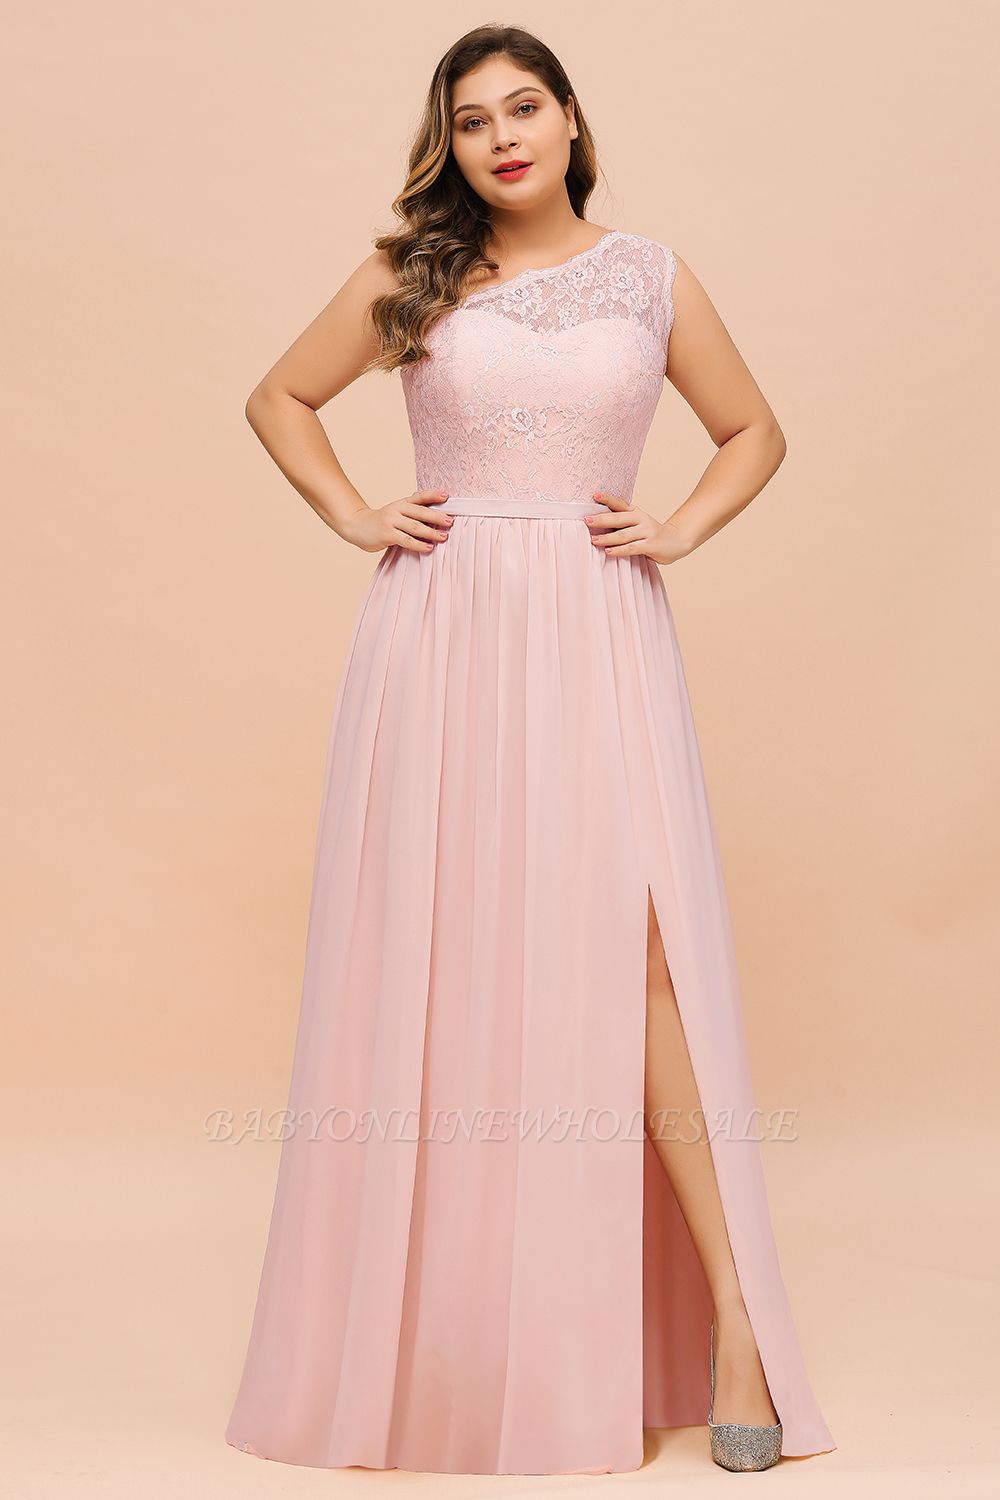 فستان سهرة بكتف واحد من الدانتيل Aline فستان وصيفة العروس باللون الوردي مع شق جانبي